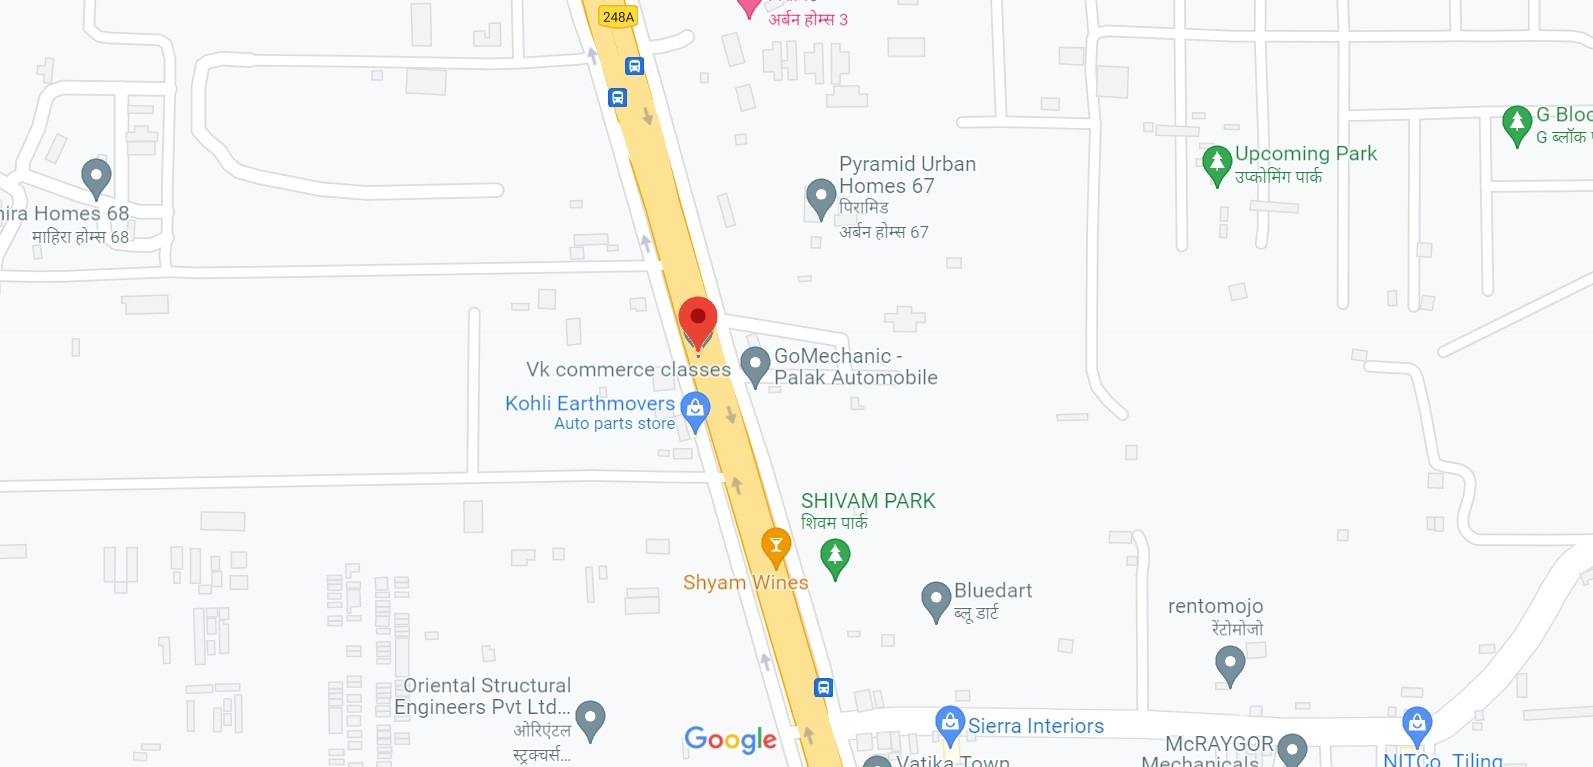 M3M Sohna Road Gurugram Location Map